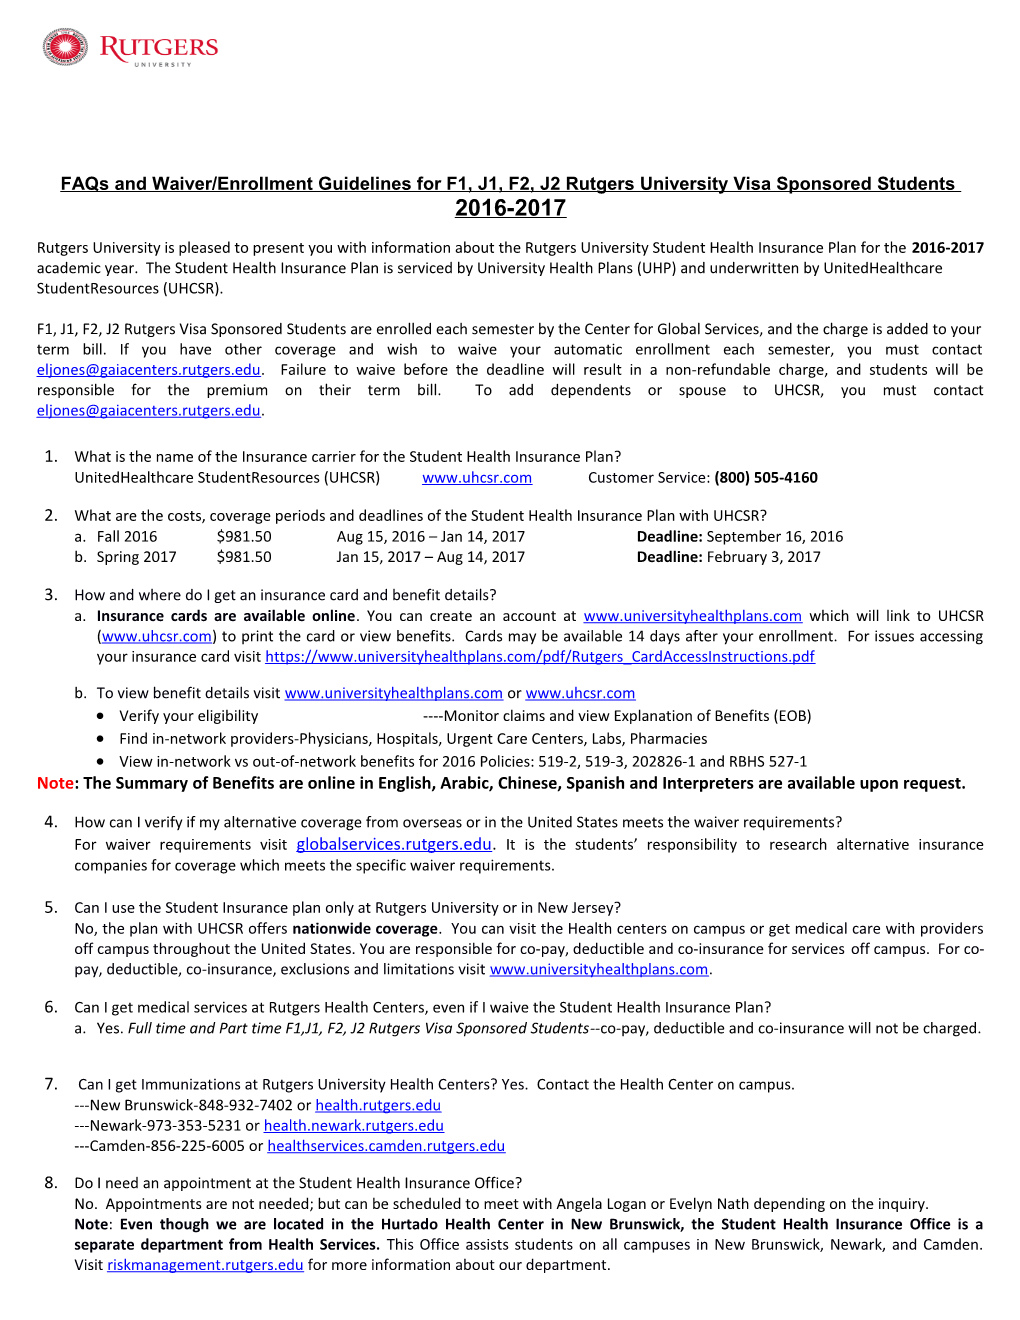 Faqs and Waiver/Enrollment Guidelines for F1, J1, F2, J2 Rutgersuniversity Visa Sponsored